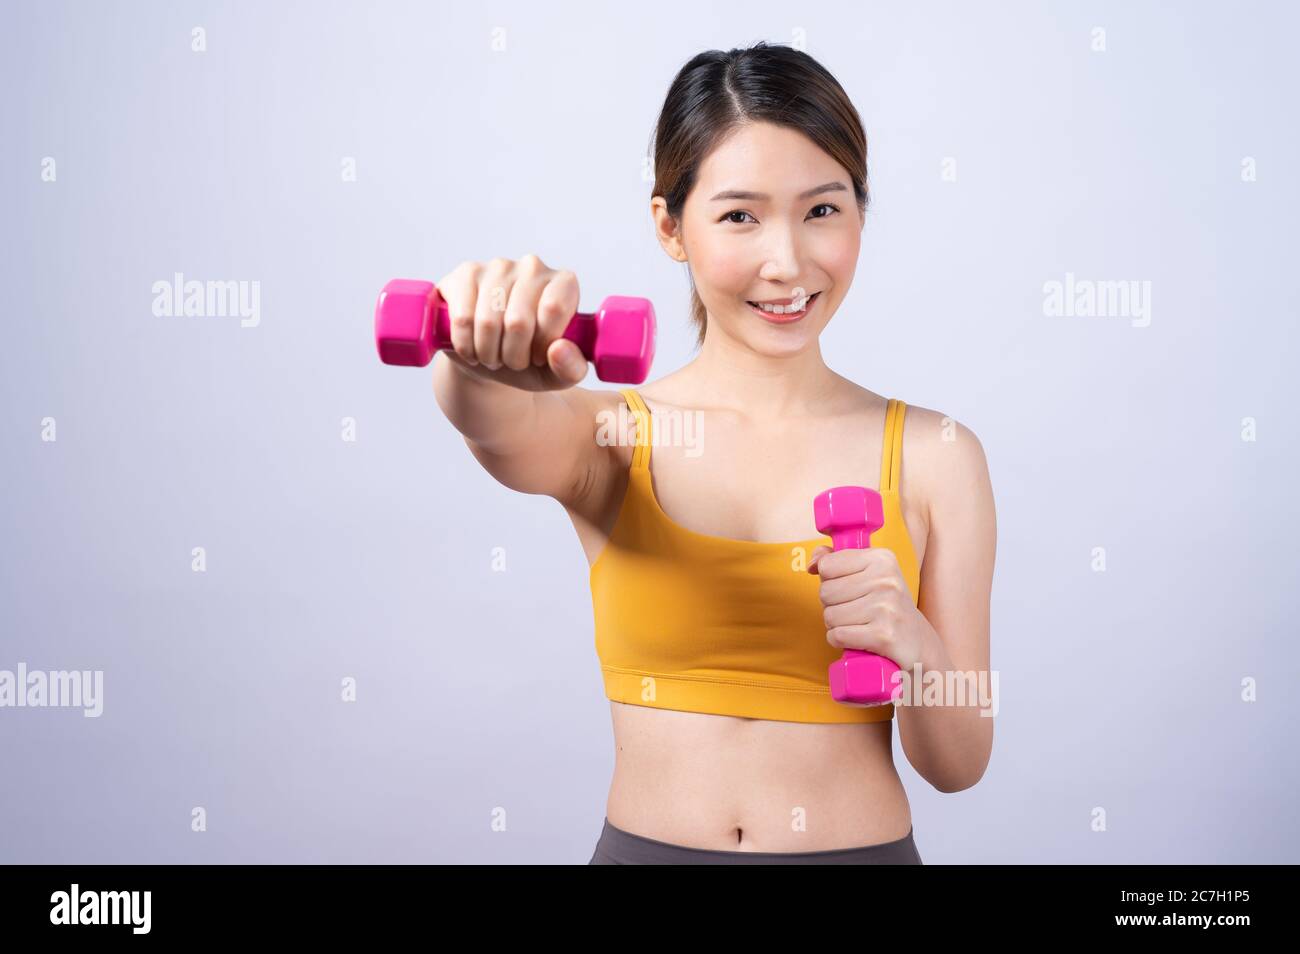 Asiatische sportliche Frau mit Hantel fit schlanken Körper isoliert auf weißem Hintergrund. Konzept der gesunden Lebensweise Stockfoto